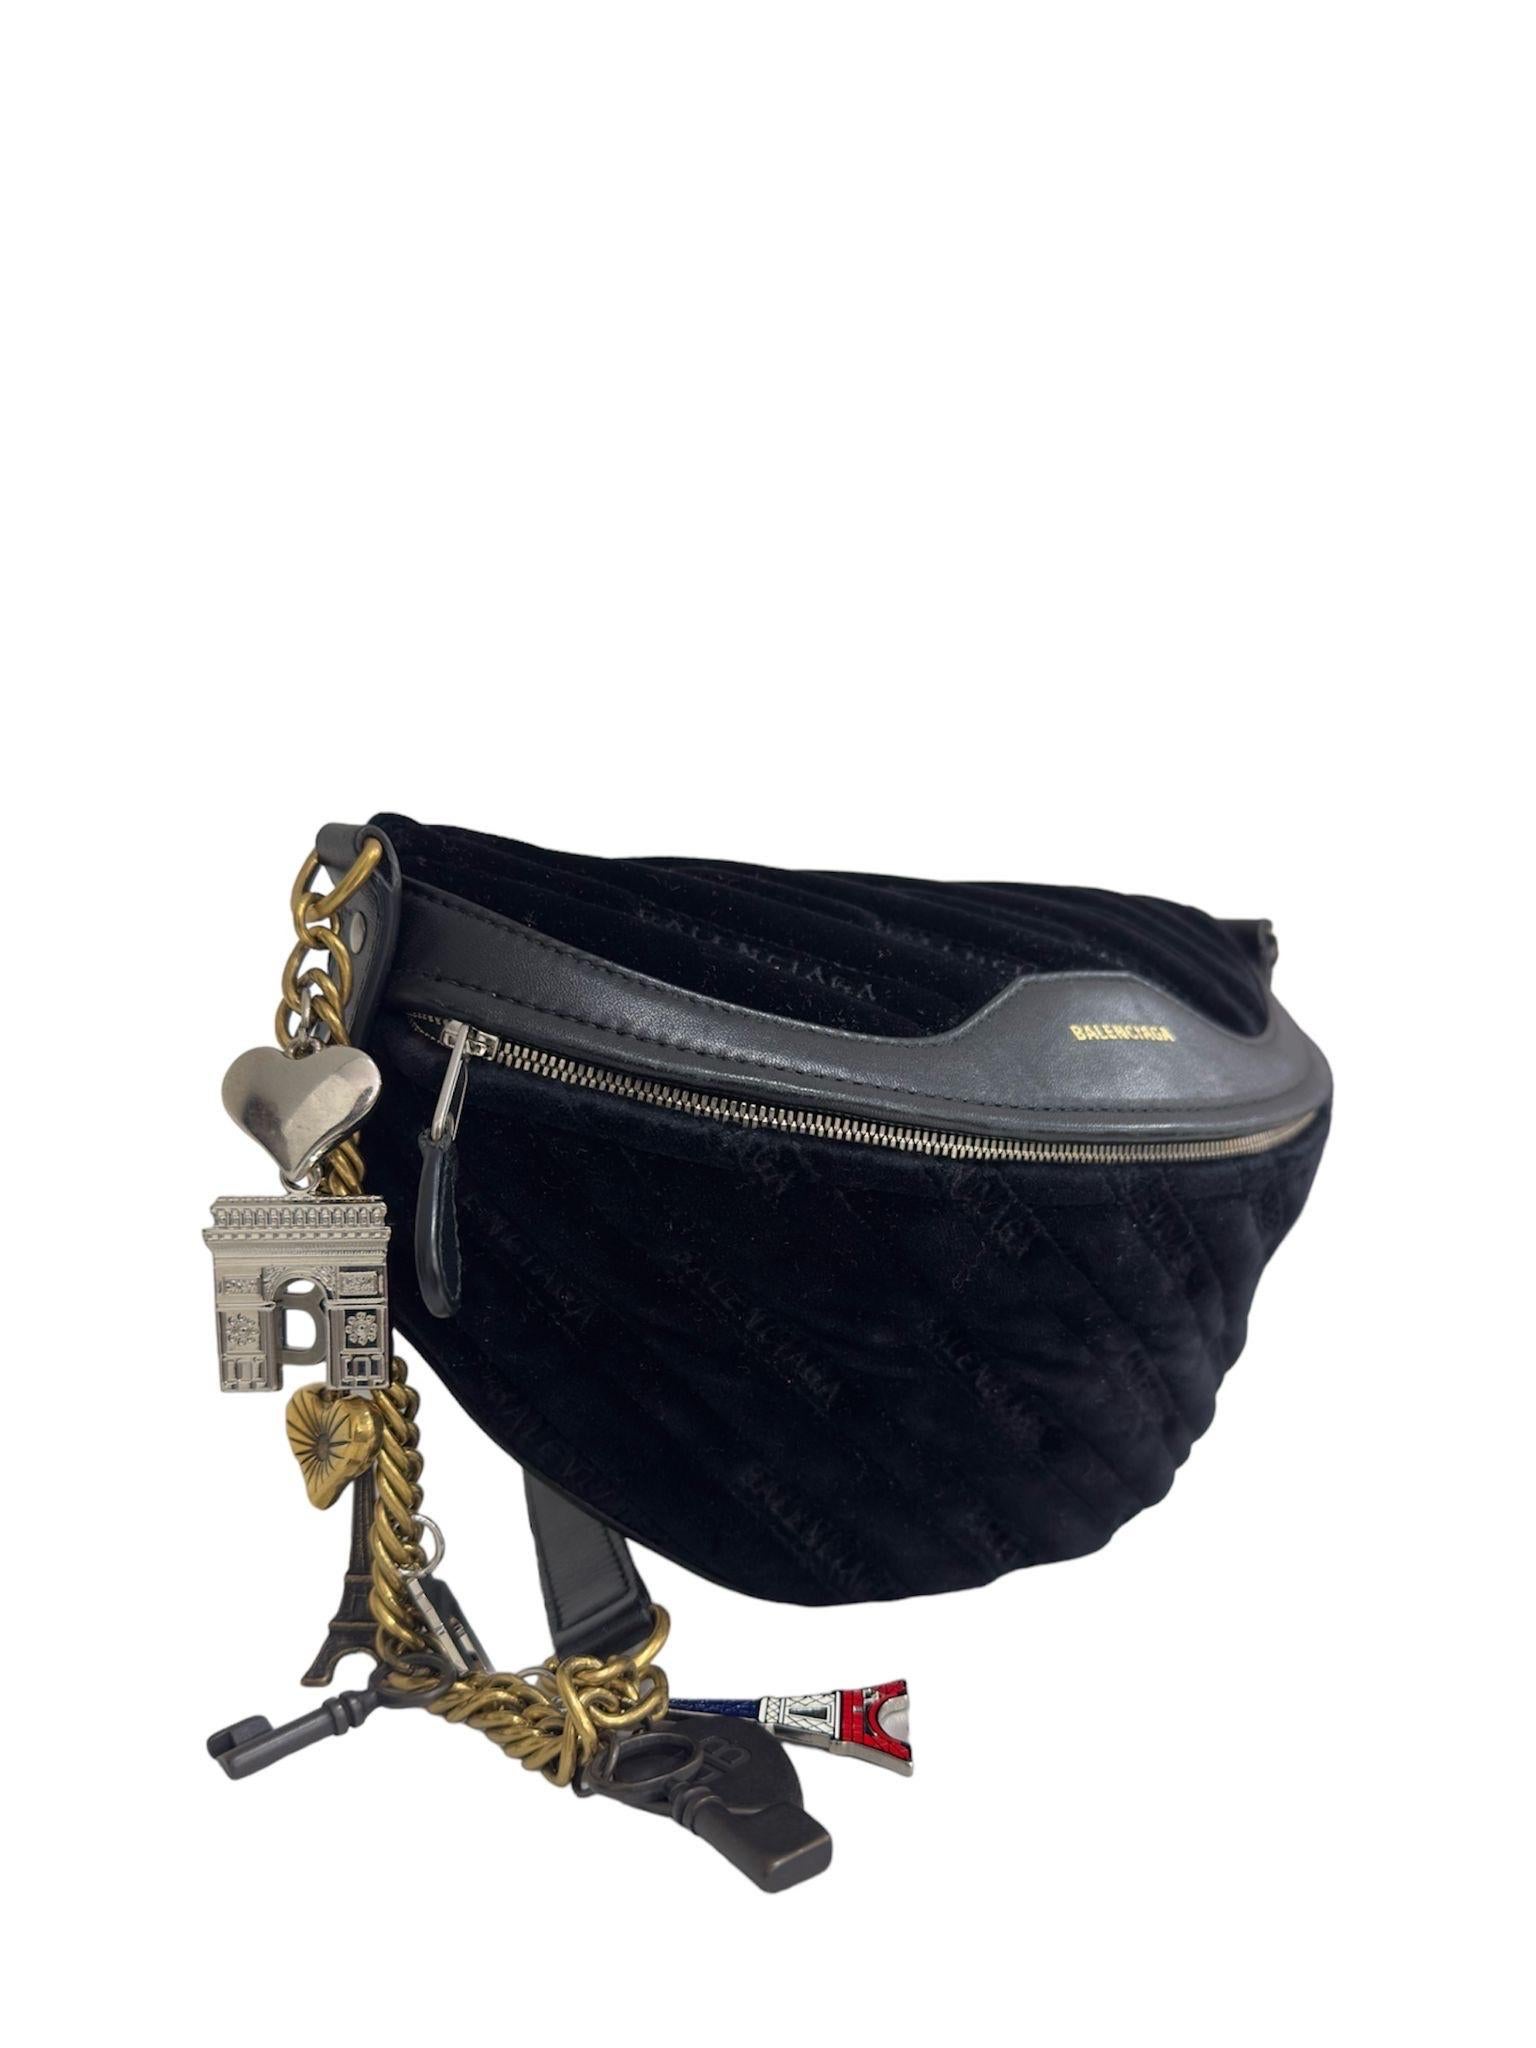 Le sac à main Balenciaga, modèle Souvenir XS, est réalisé en cuir noir avec des insertions en cuir ton sur ton et des ferrures dorées. Il est doté d'une ouverture zippée sur le devant. Munito di una tracolla realizzata in pelle e catena a maglia